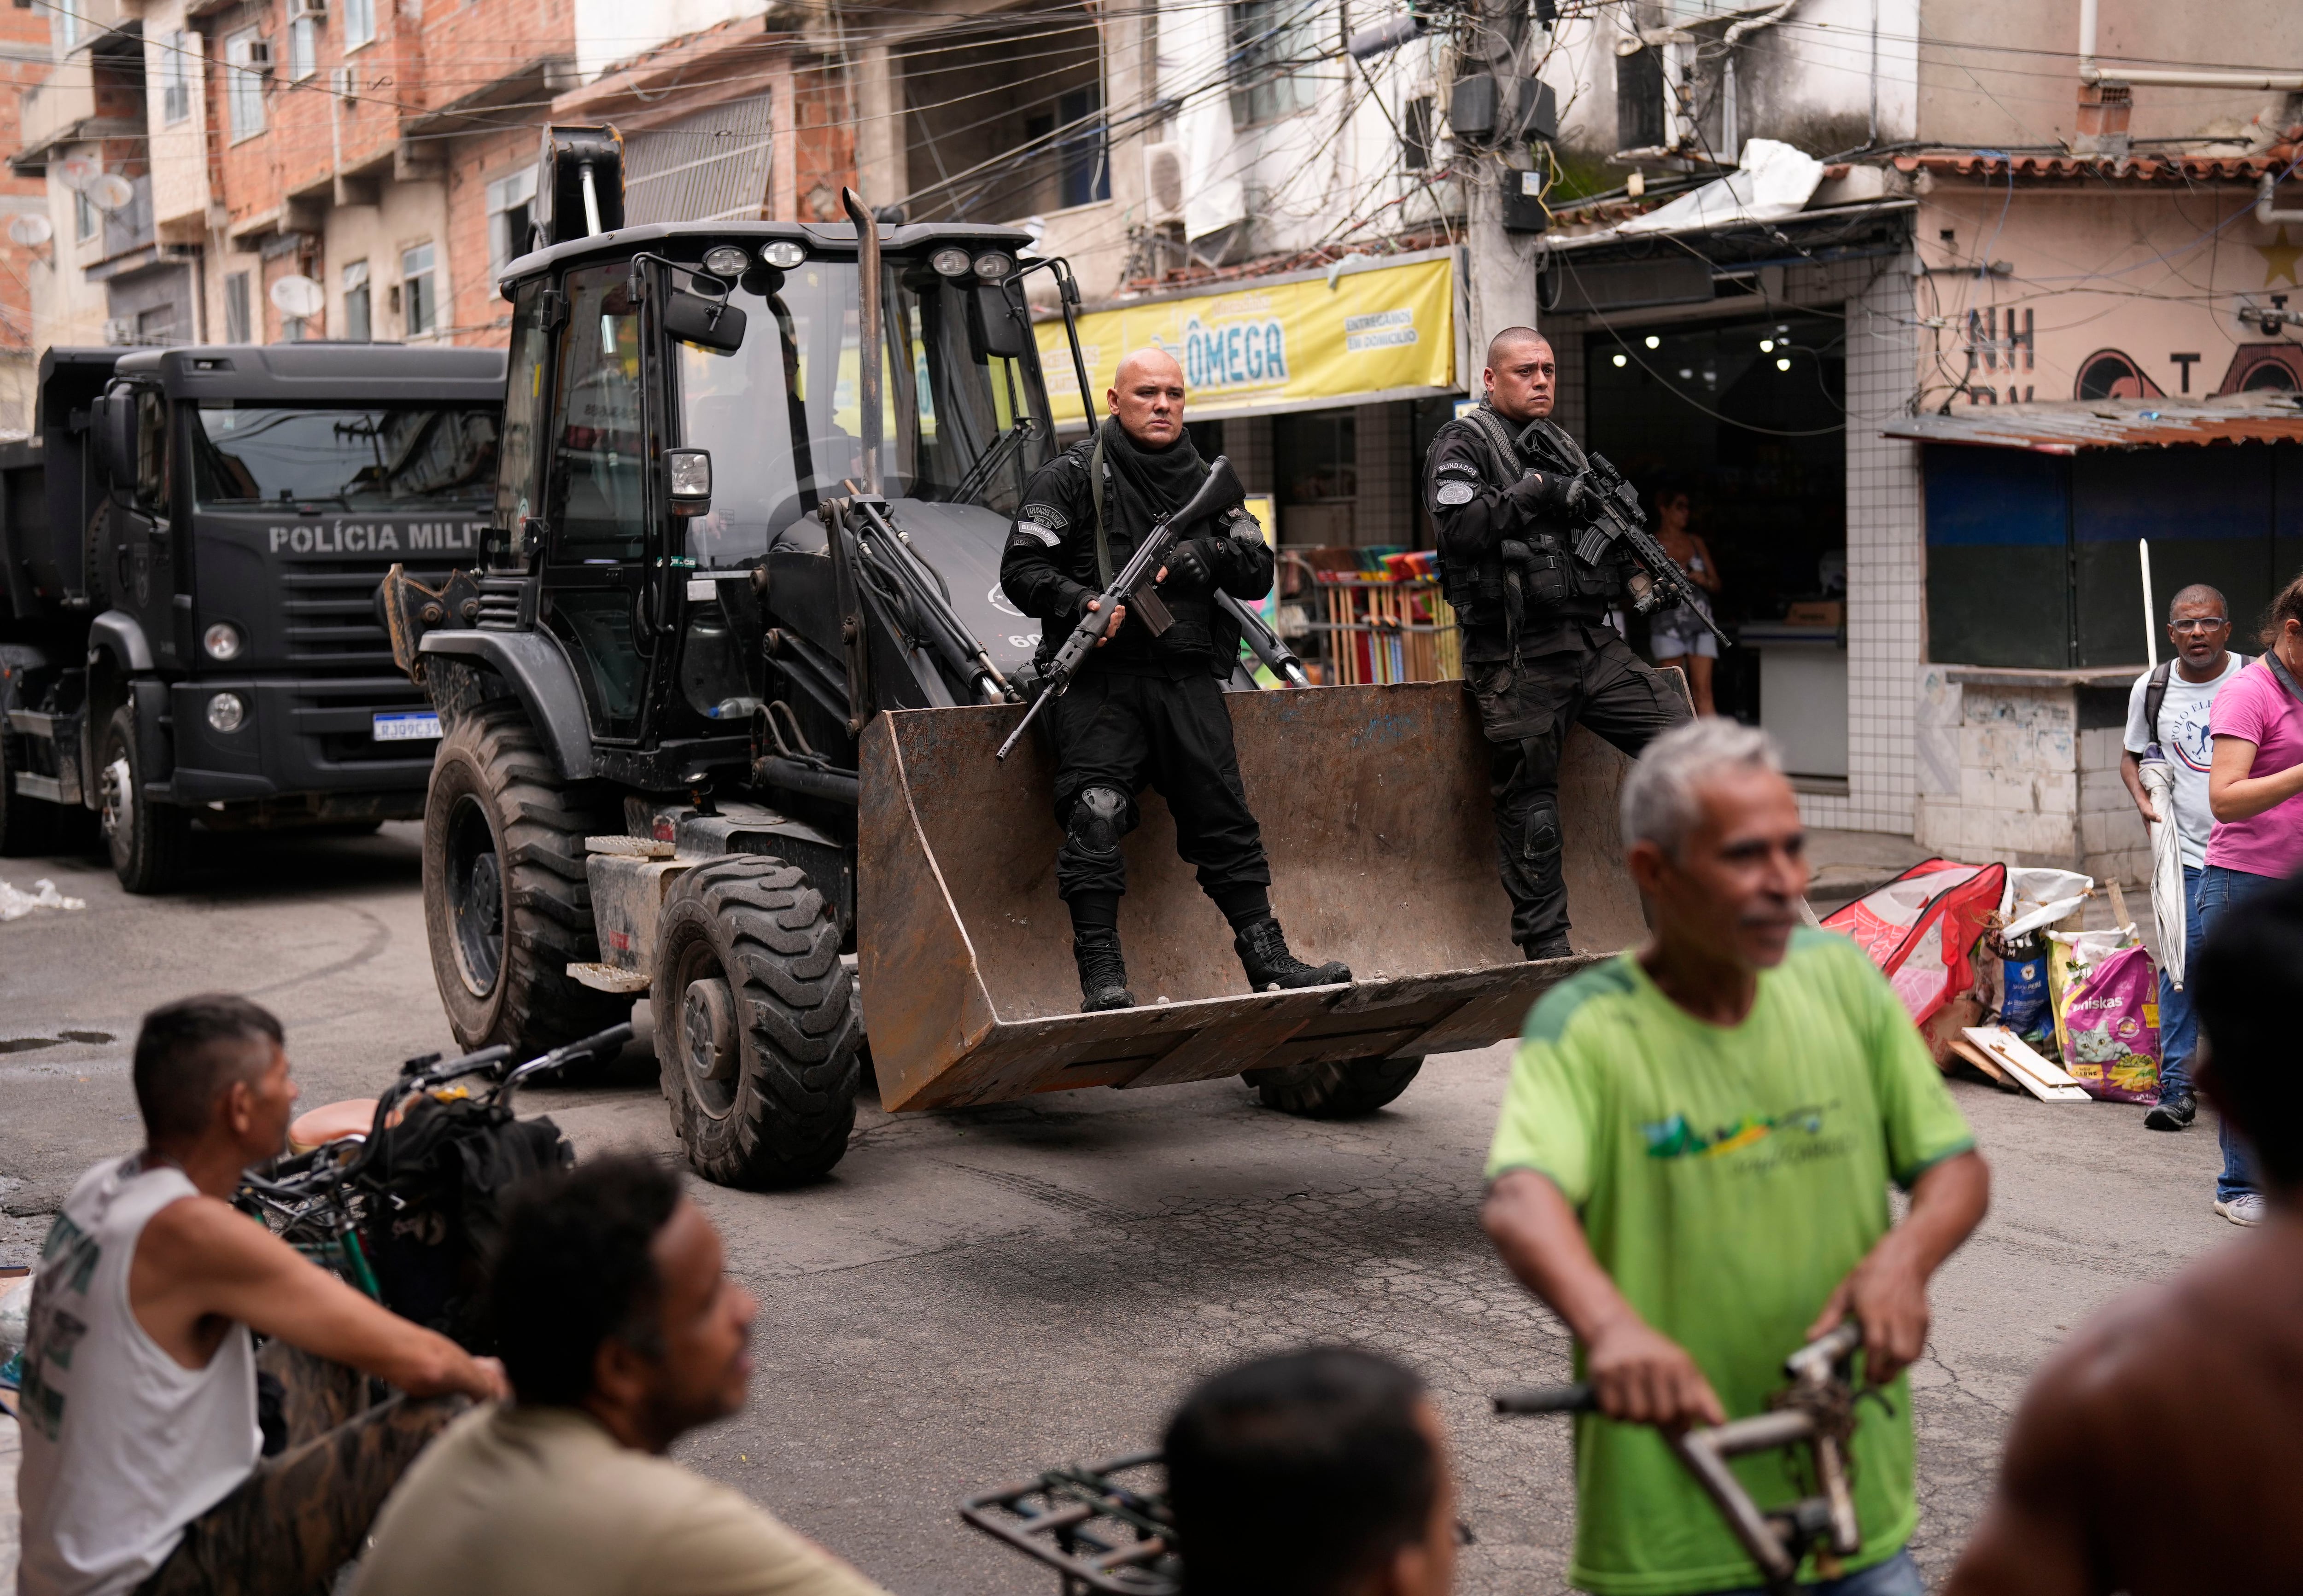 Efectivos de la policía pasan junto a residentes en Río de Janeiro, Brasil (AP Foto/Silvia Izquierdo)